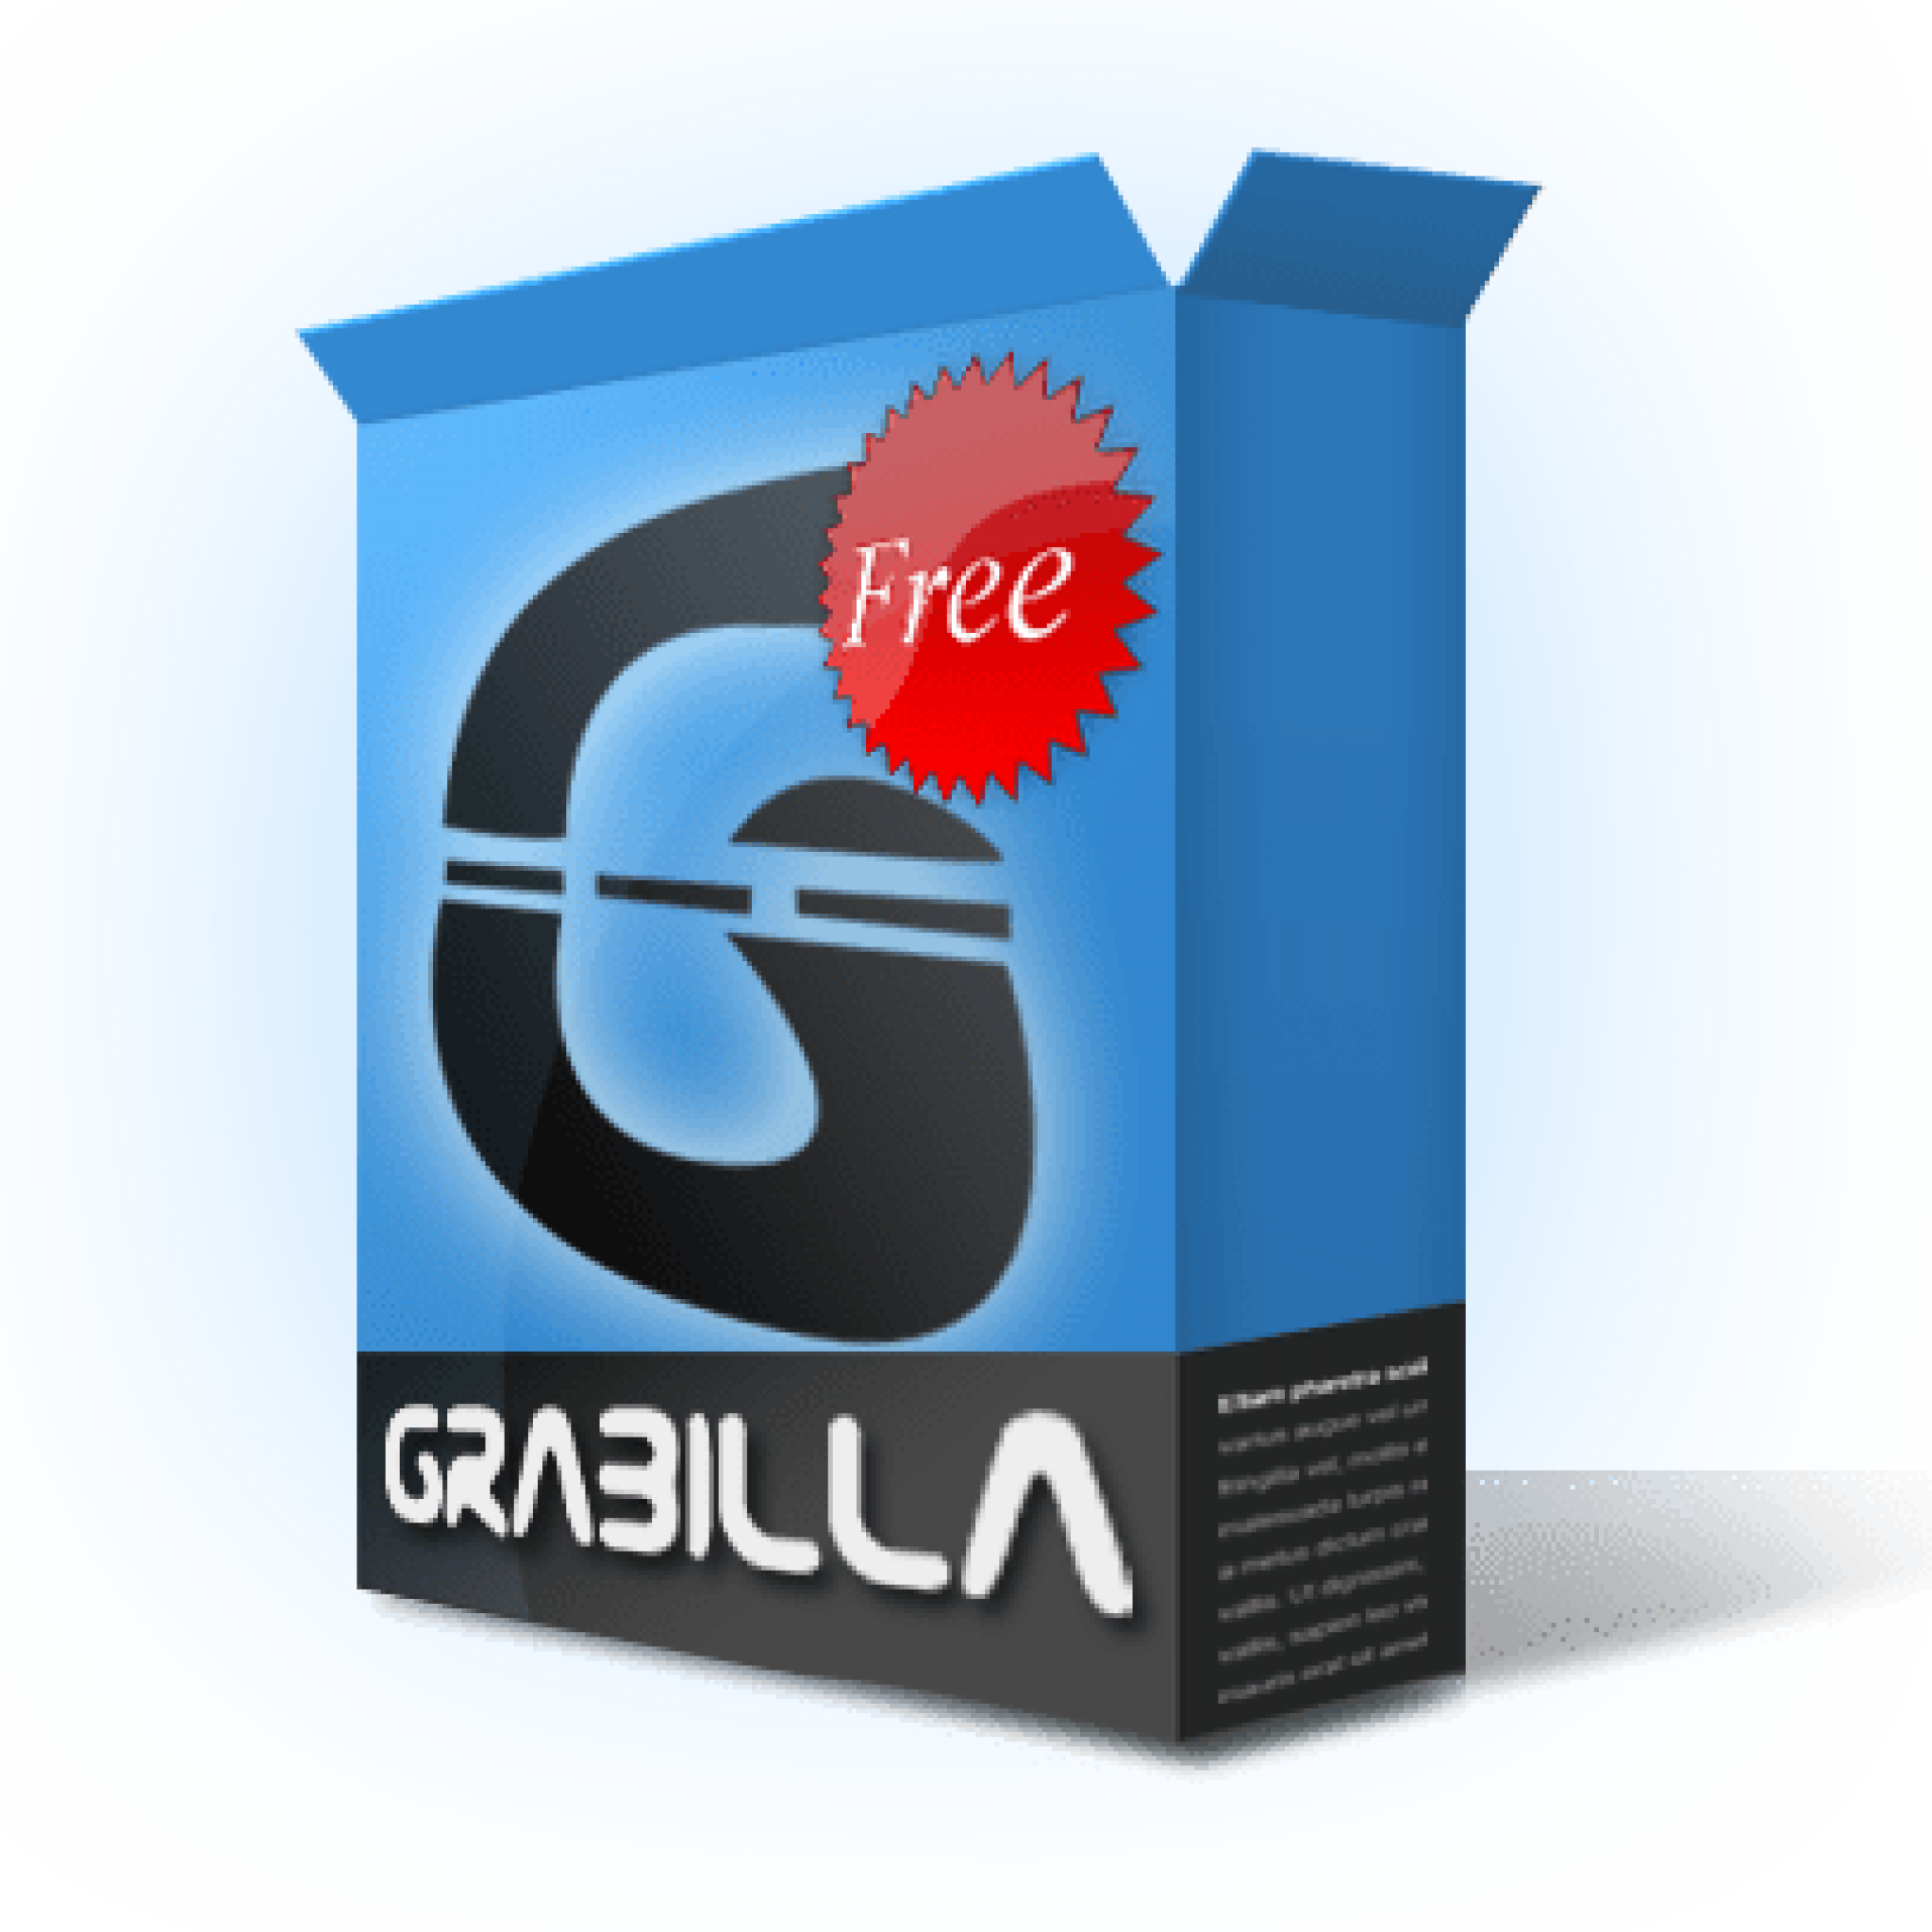 Grabilla: Una Aplicación Gratuita Para Realizar Screenshots Y Screencasts